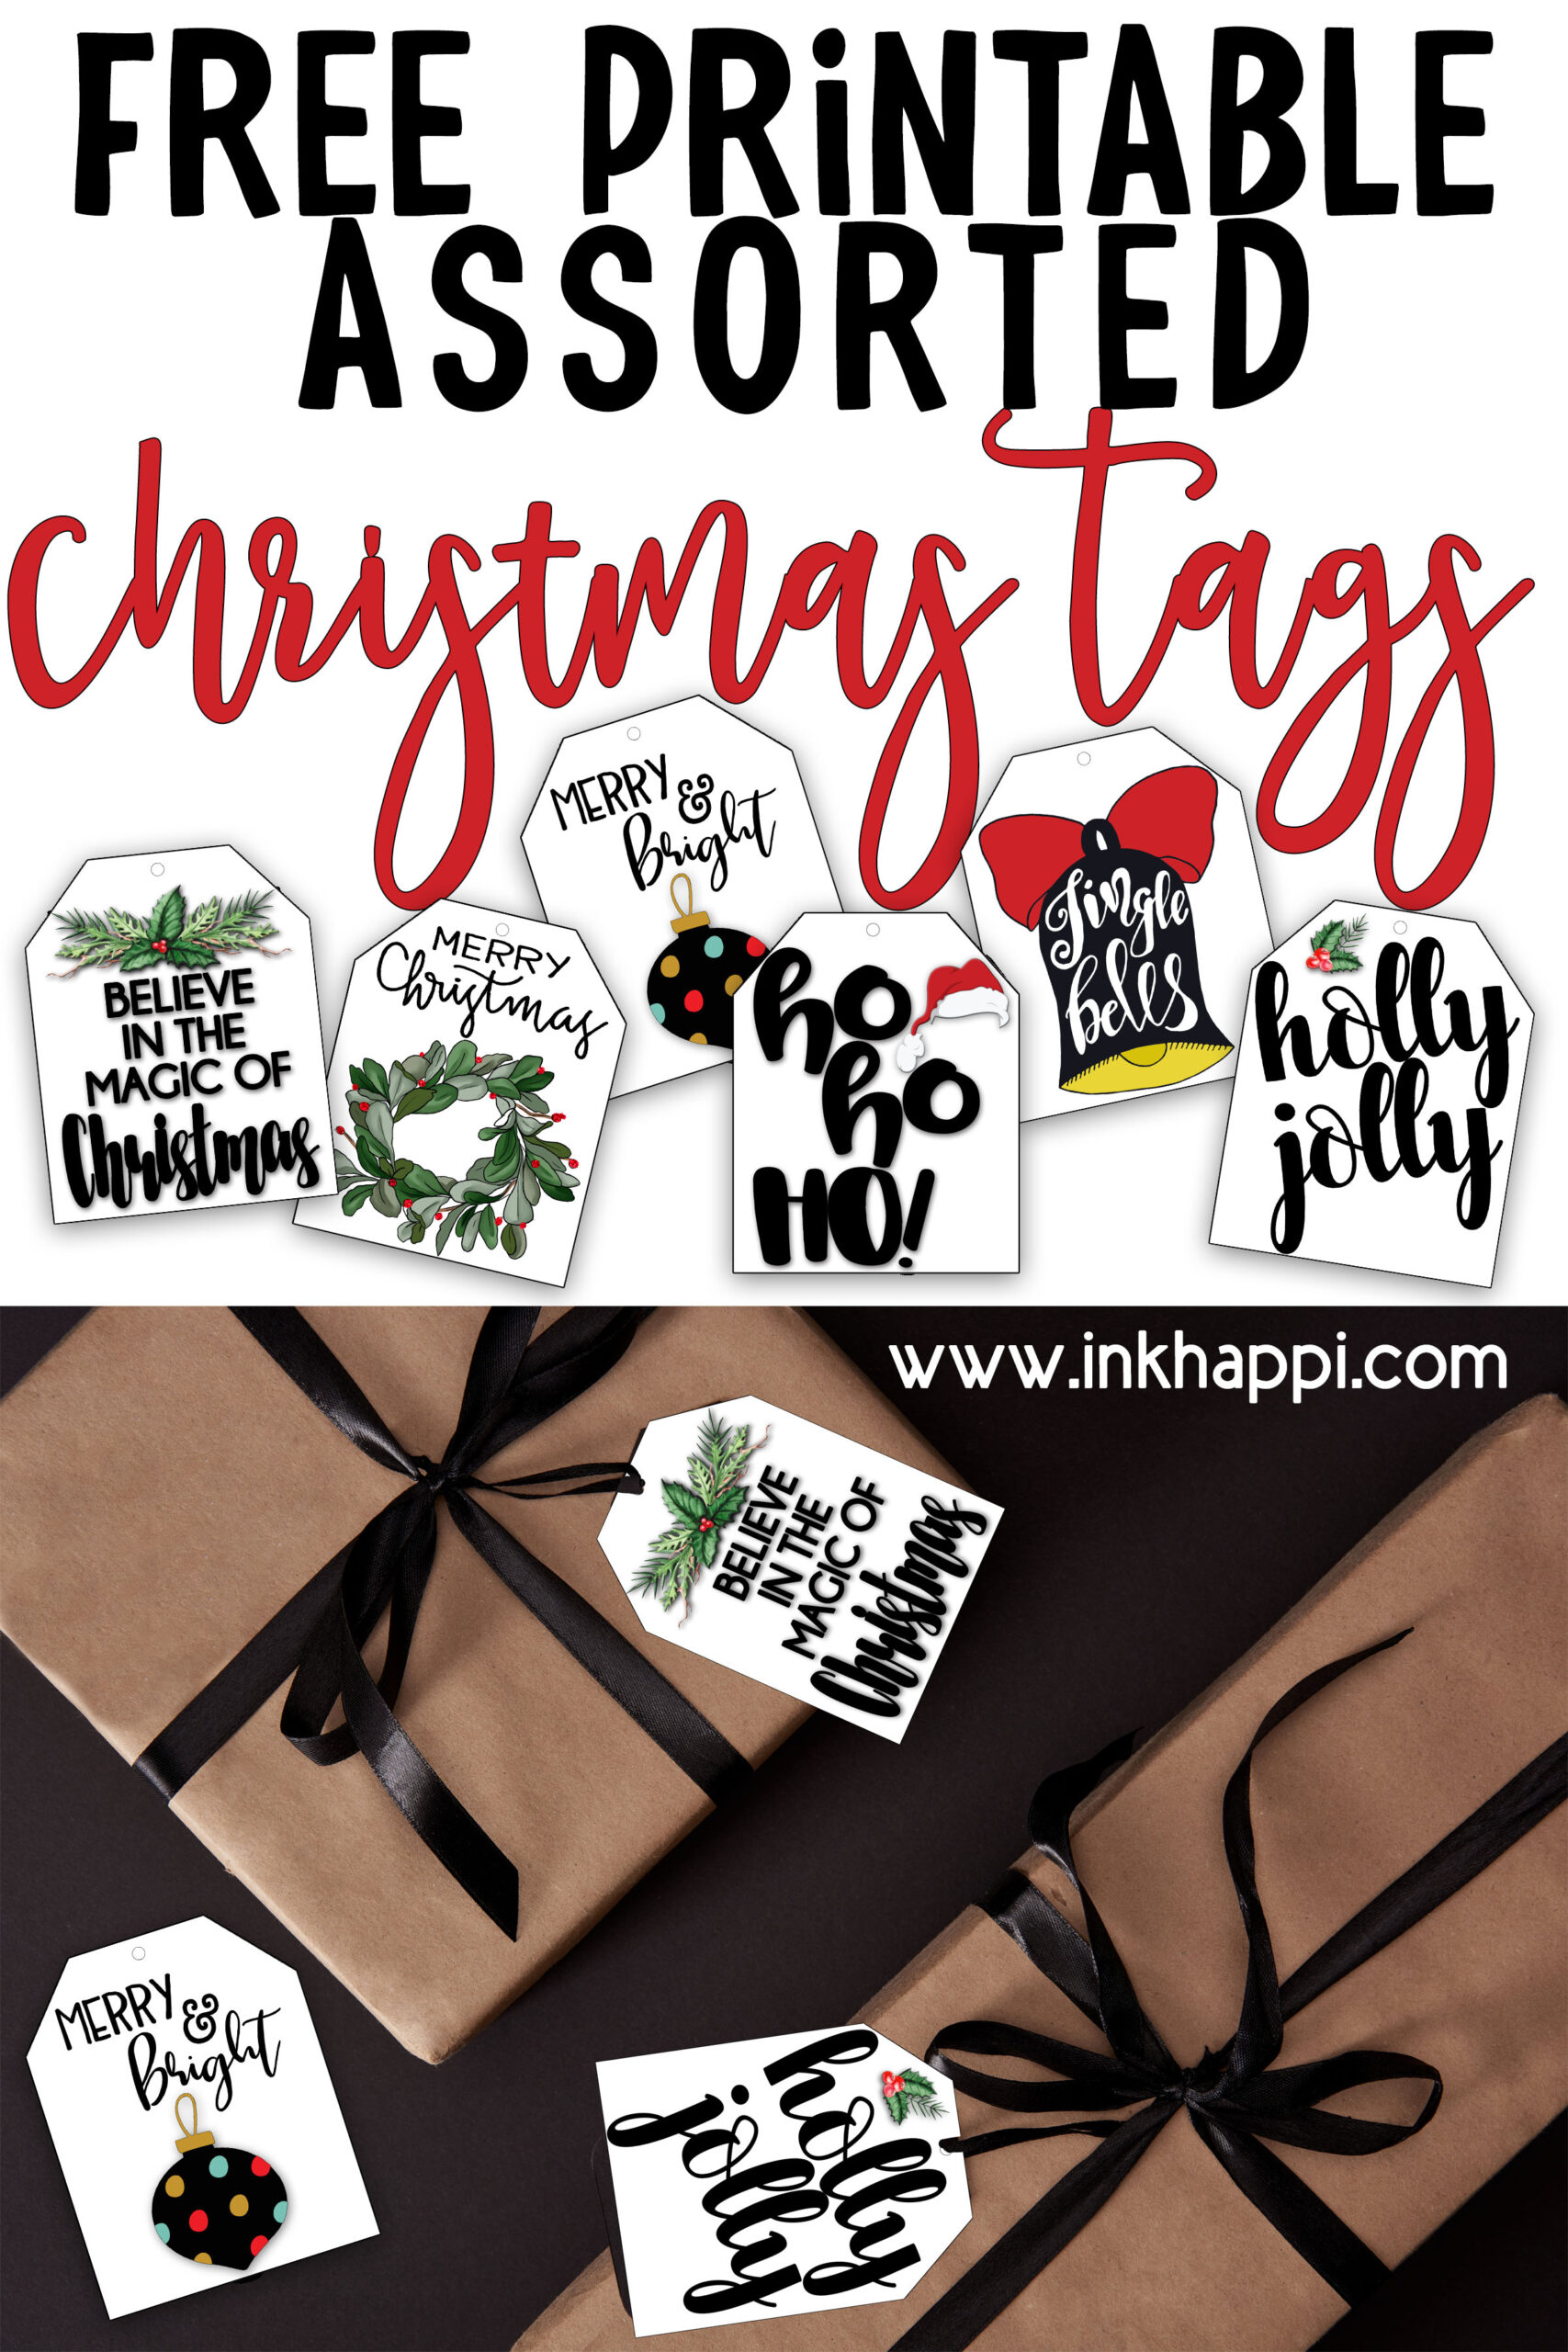 Free printable assorted cute Christmas tags. 6 styles including Santa hohoho gift tags. #freeprintables #gifttags #Christmas